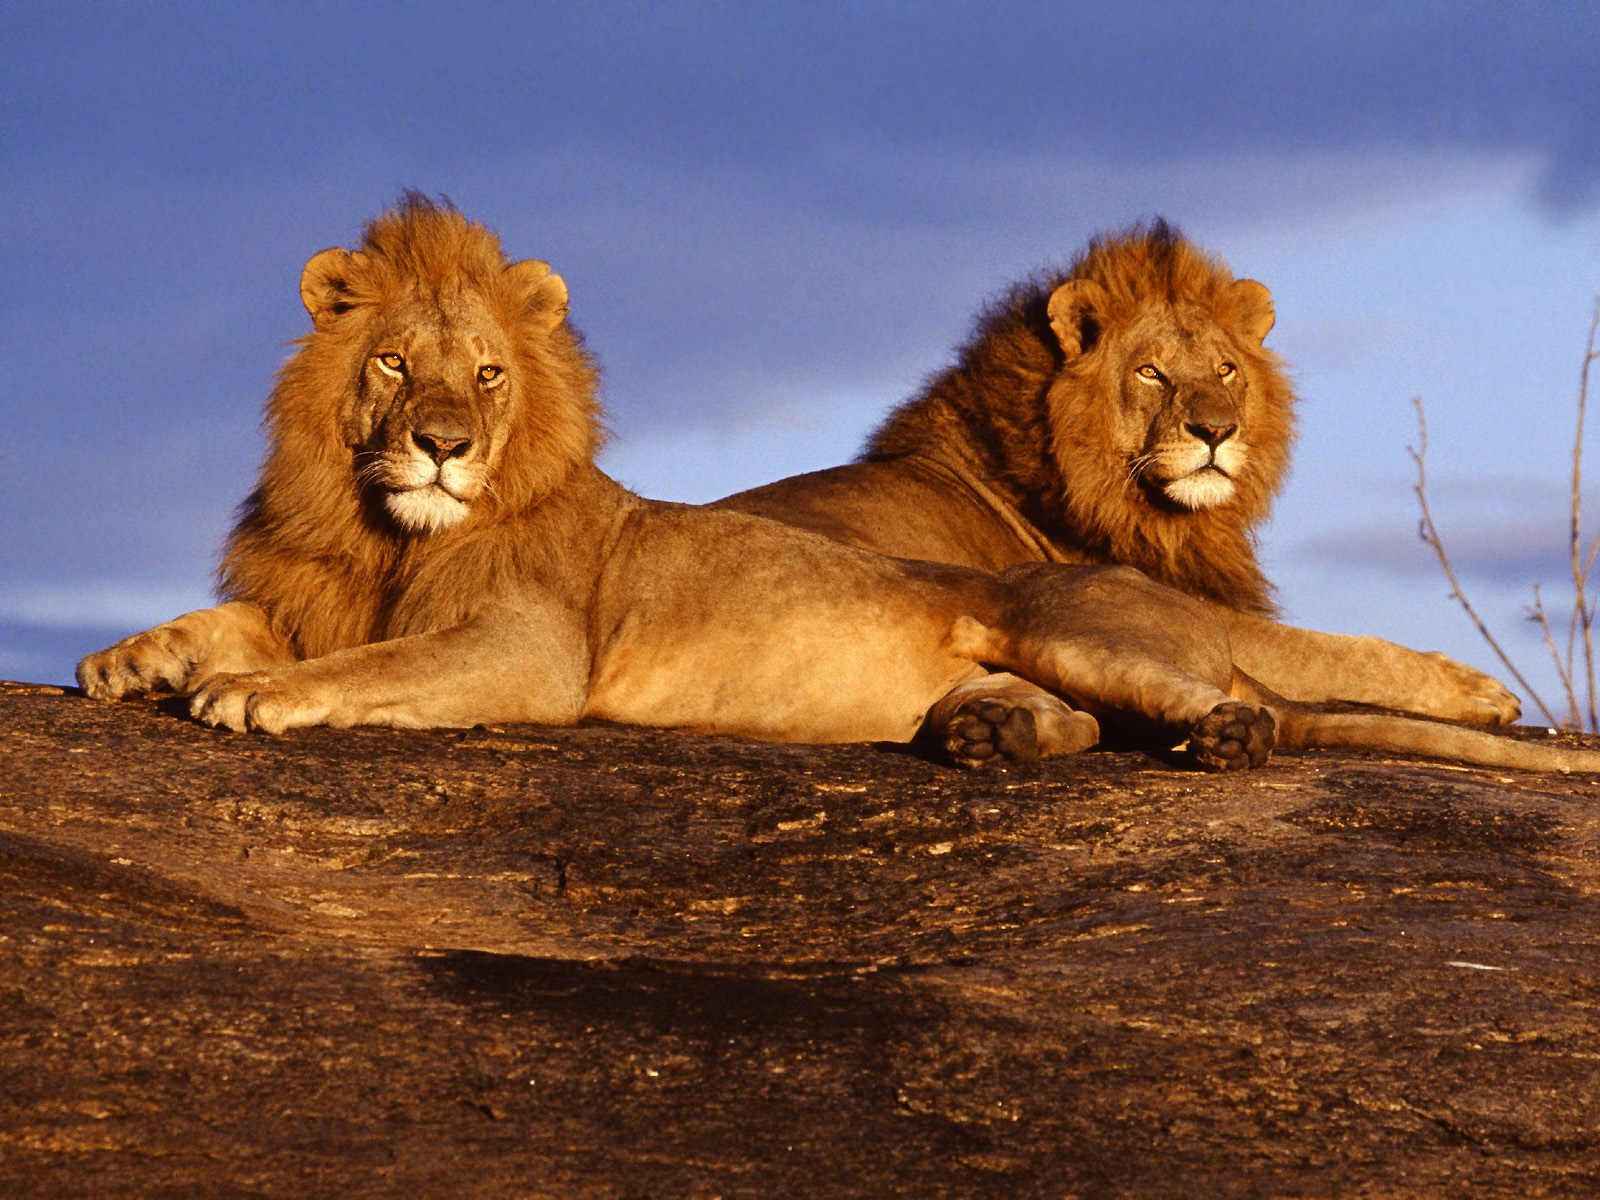 http://1.bp.blogspot.com/-p5EXYNFGybU/UEpKeXP7SnI/AAAAAAAAC1A/d1jIo8alMTI/s1600/African+Lions.jpg